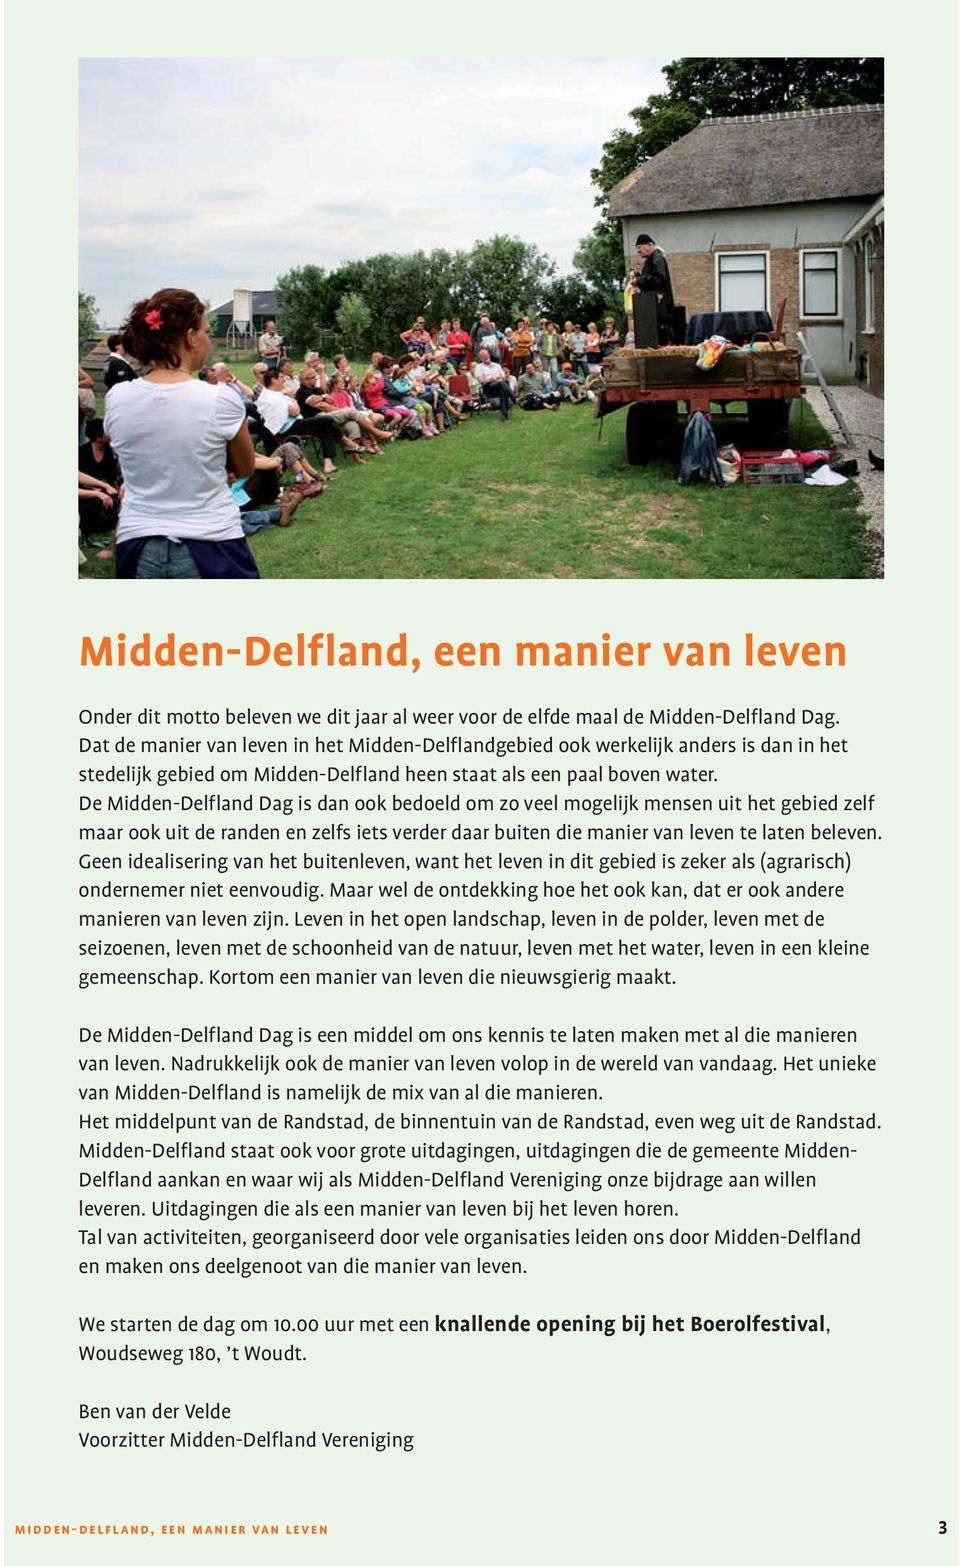 De Midden-Delfland Dag is dan ook bedoeld om zo veel mogelijk mensen uit het gebied zelf maar ook uit de randen en zelfs iets verder daar buiten die manier van leven te laten beleven.